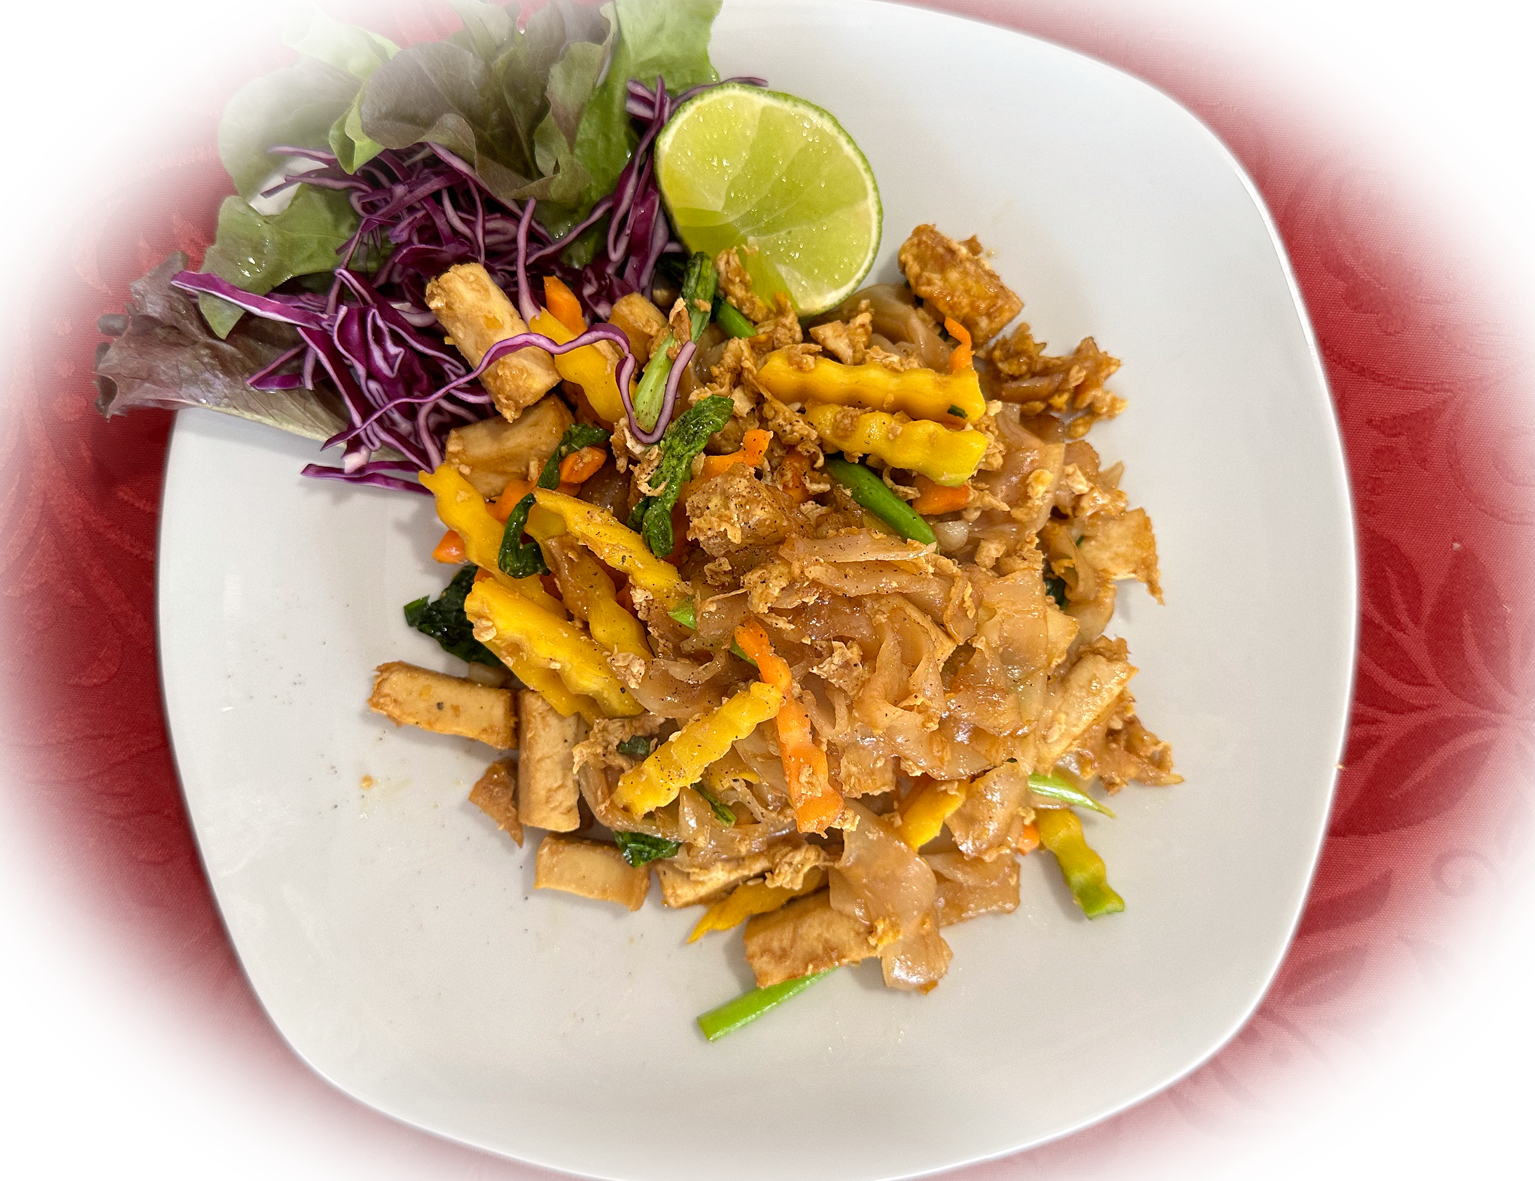 Pad Si Ew ist ein köstliches thailändisches Nudelgericht, das sich durch breite Reisnudeln auszeichn